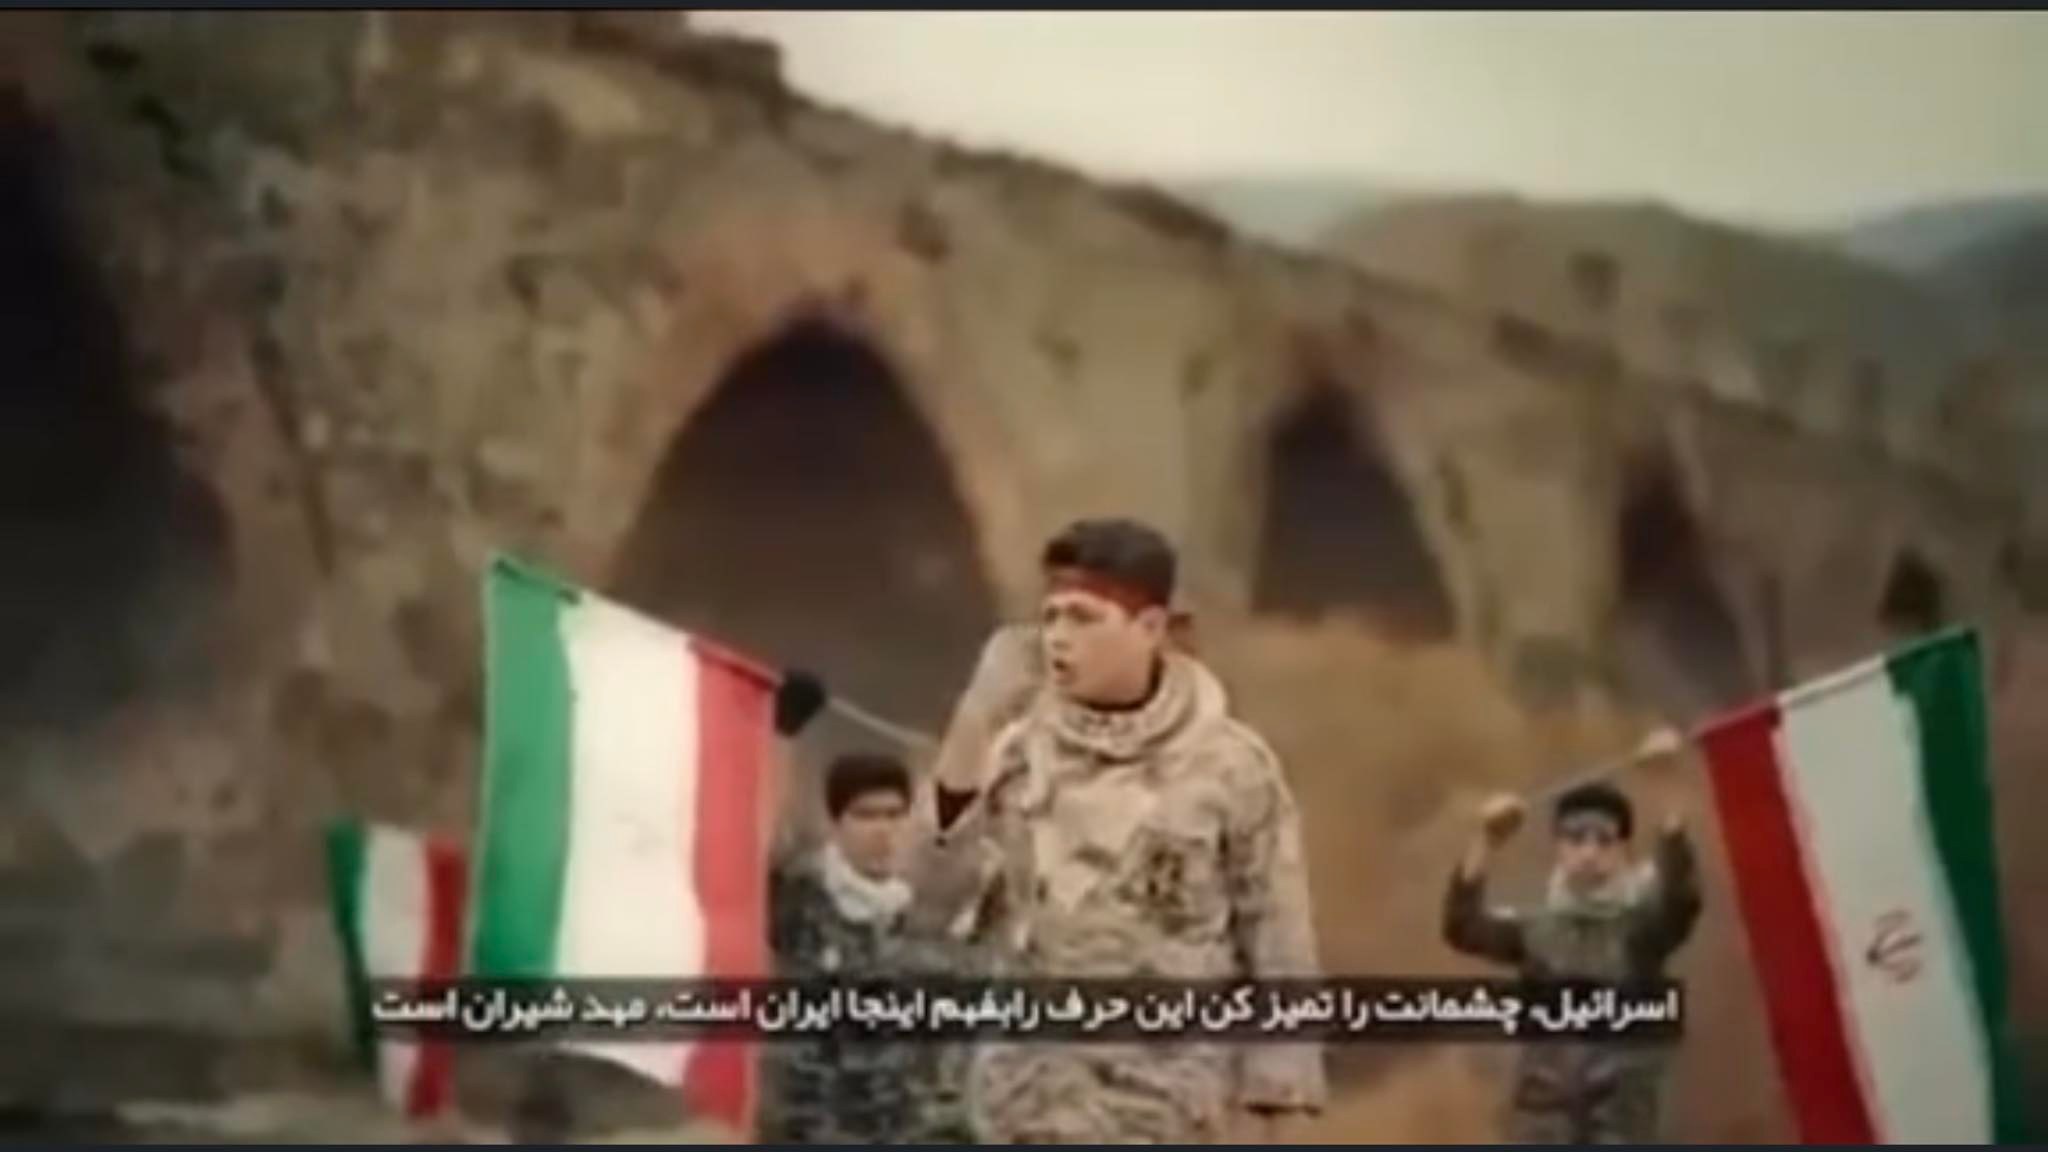 Իրանում տեսահոլովակ են նկարել Խոդա Աֆարինի կամրջի մոտ (Արաքսի ափին)` Ադրբեջանի հետ սահմանին` զգուշացնելով Ադրբեջանին